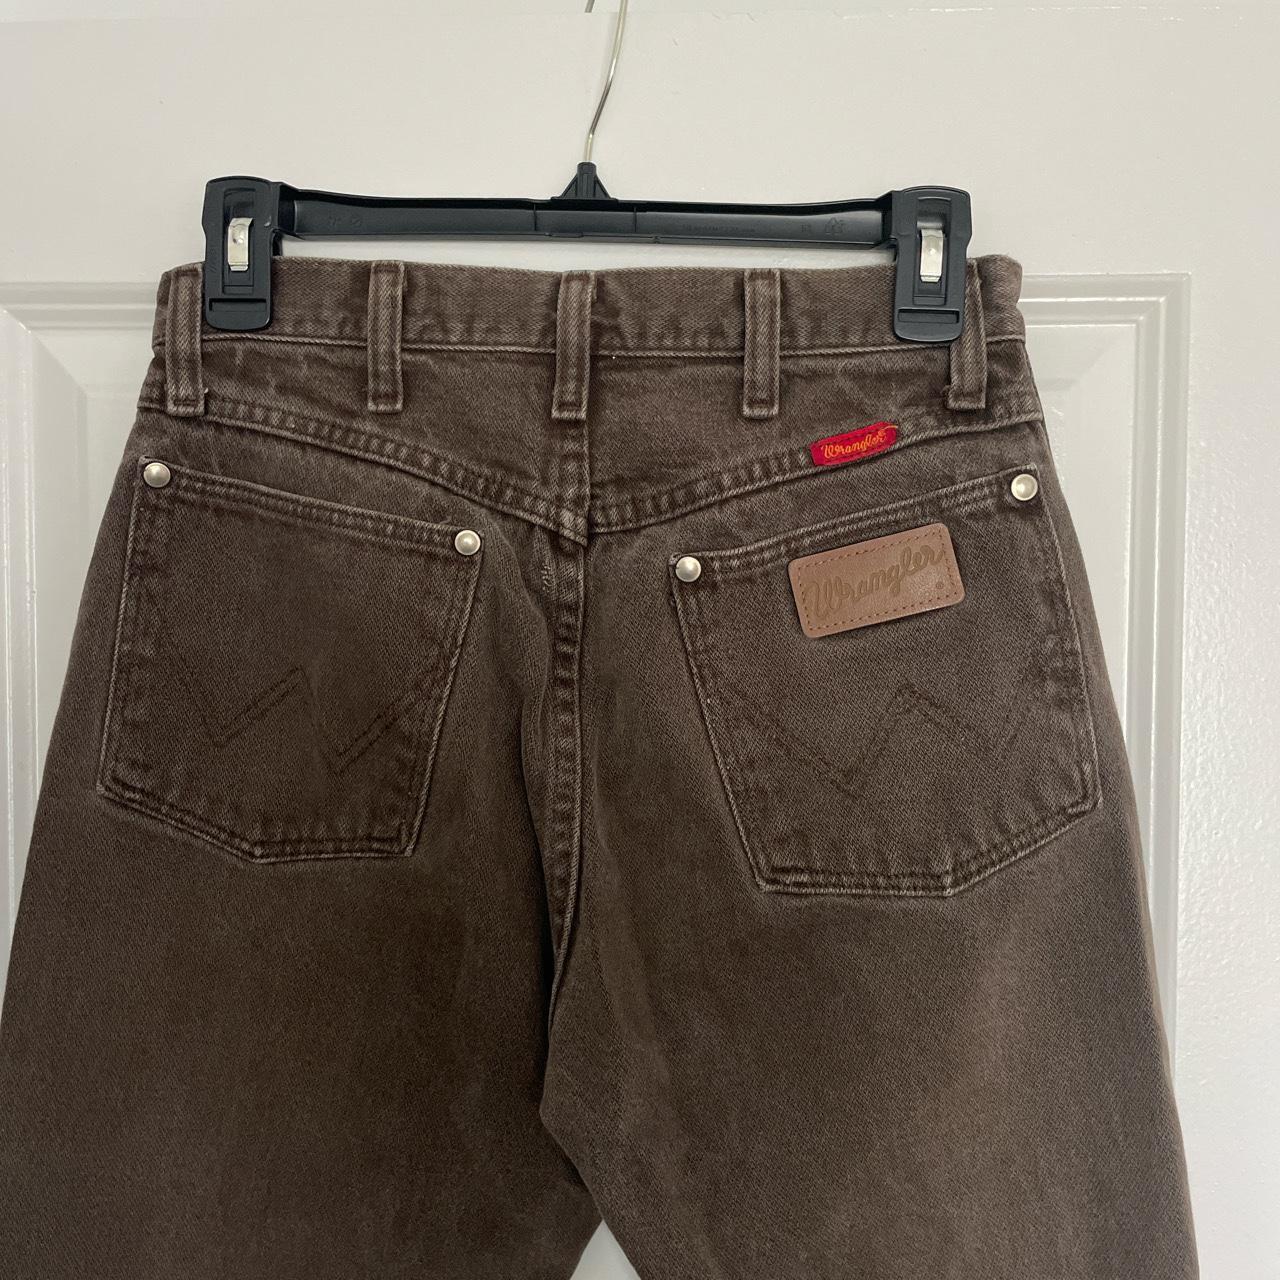 Vintage brown Wrangler jeans! Size 26 waist - Depop